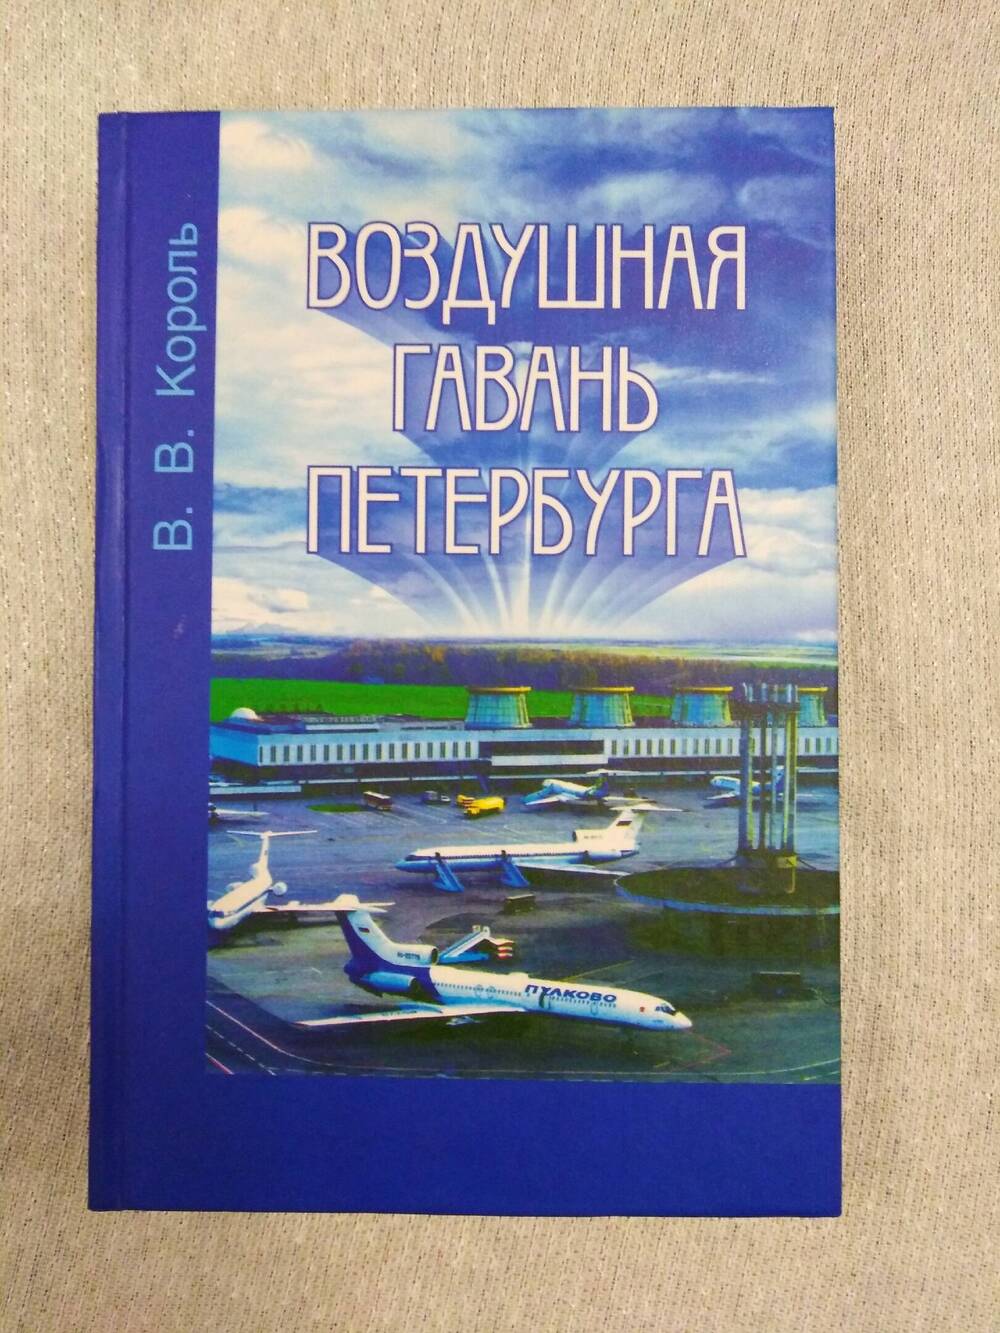 Книга Король В.В. Воздушная гавань Петербурга: Страницы истории авиапредприятия Пулково.